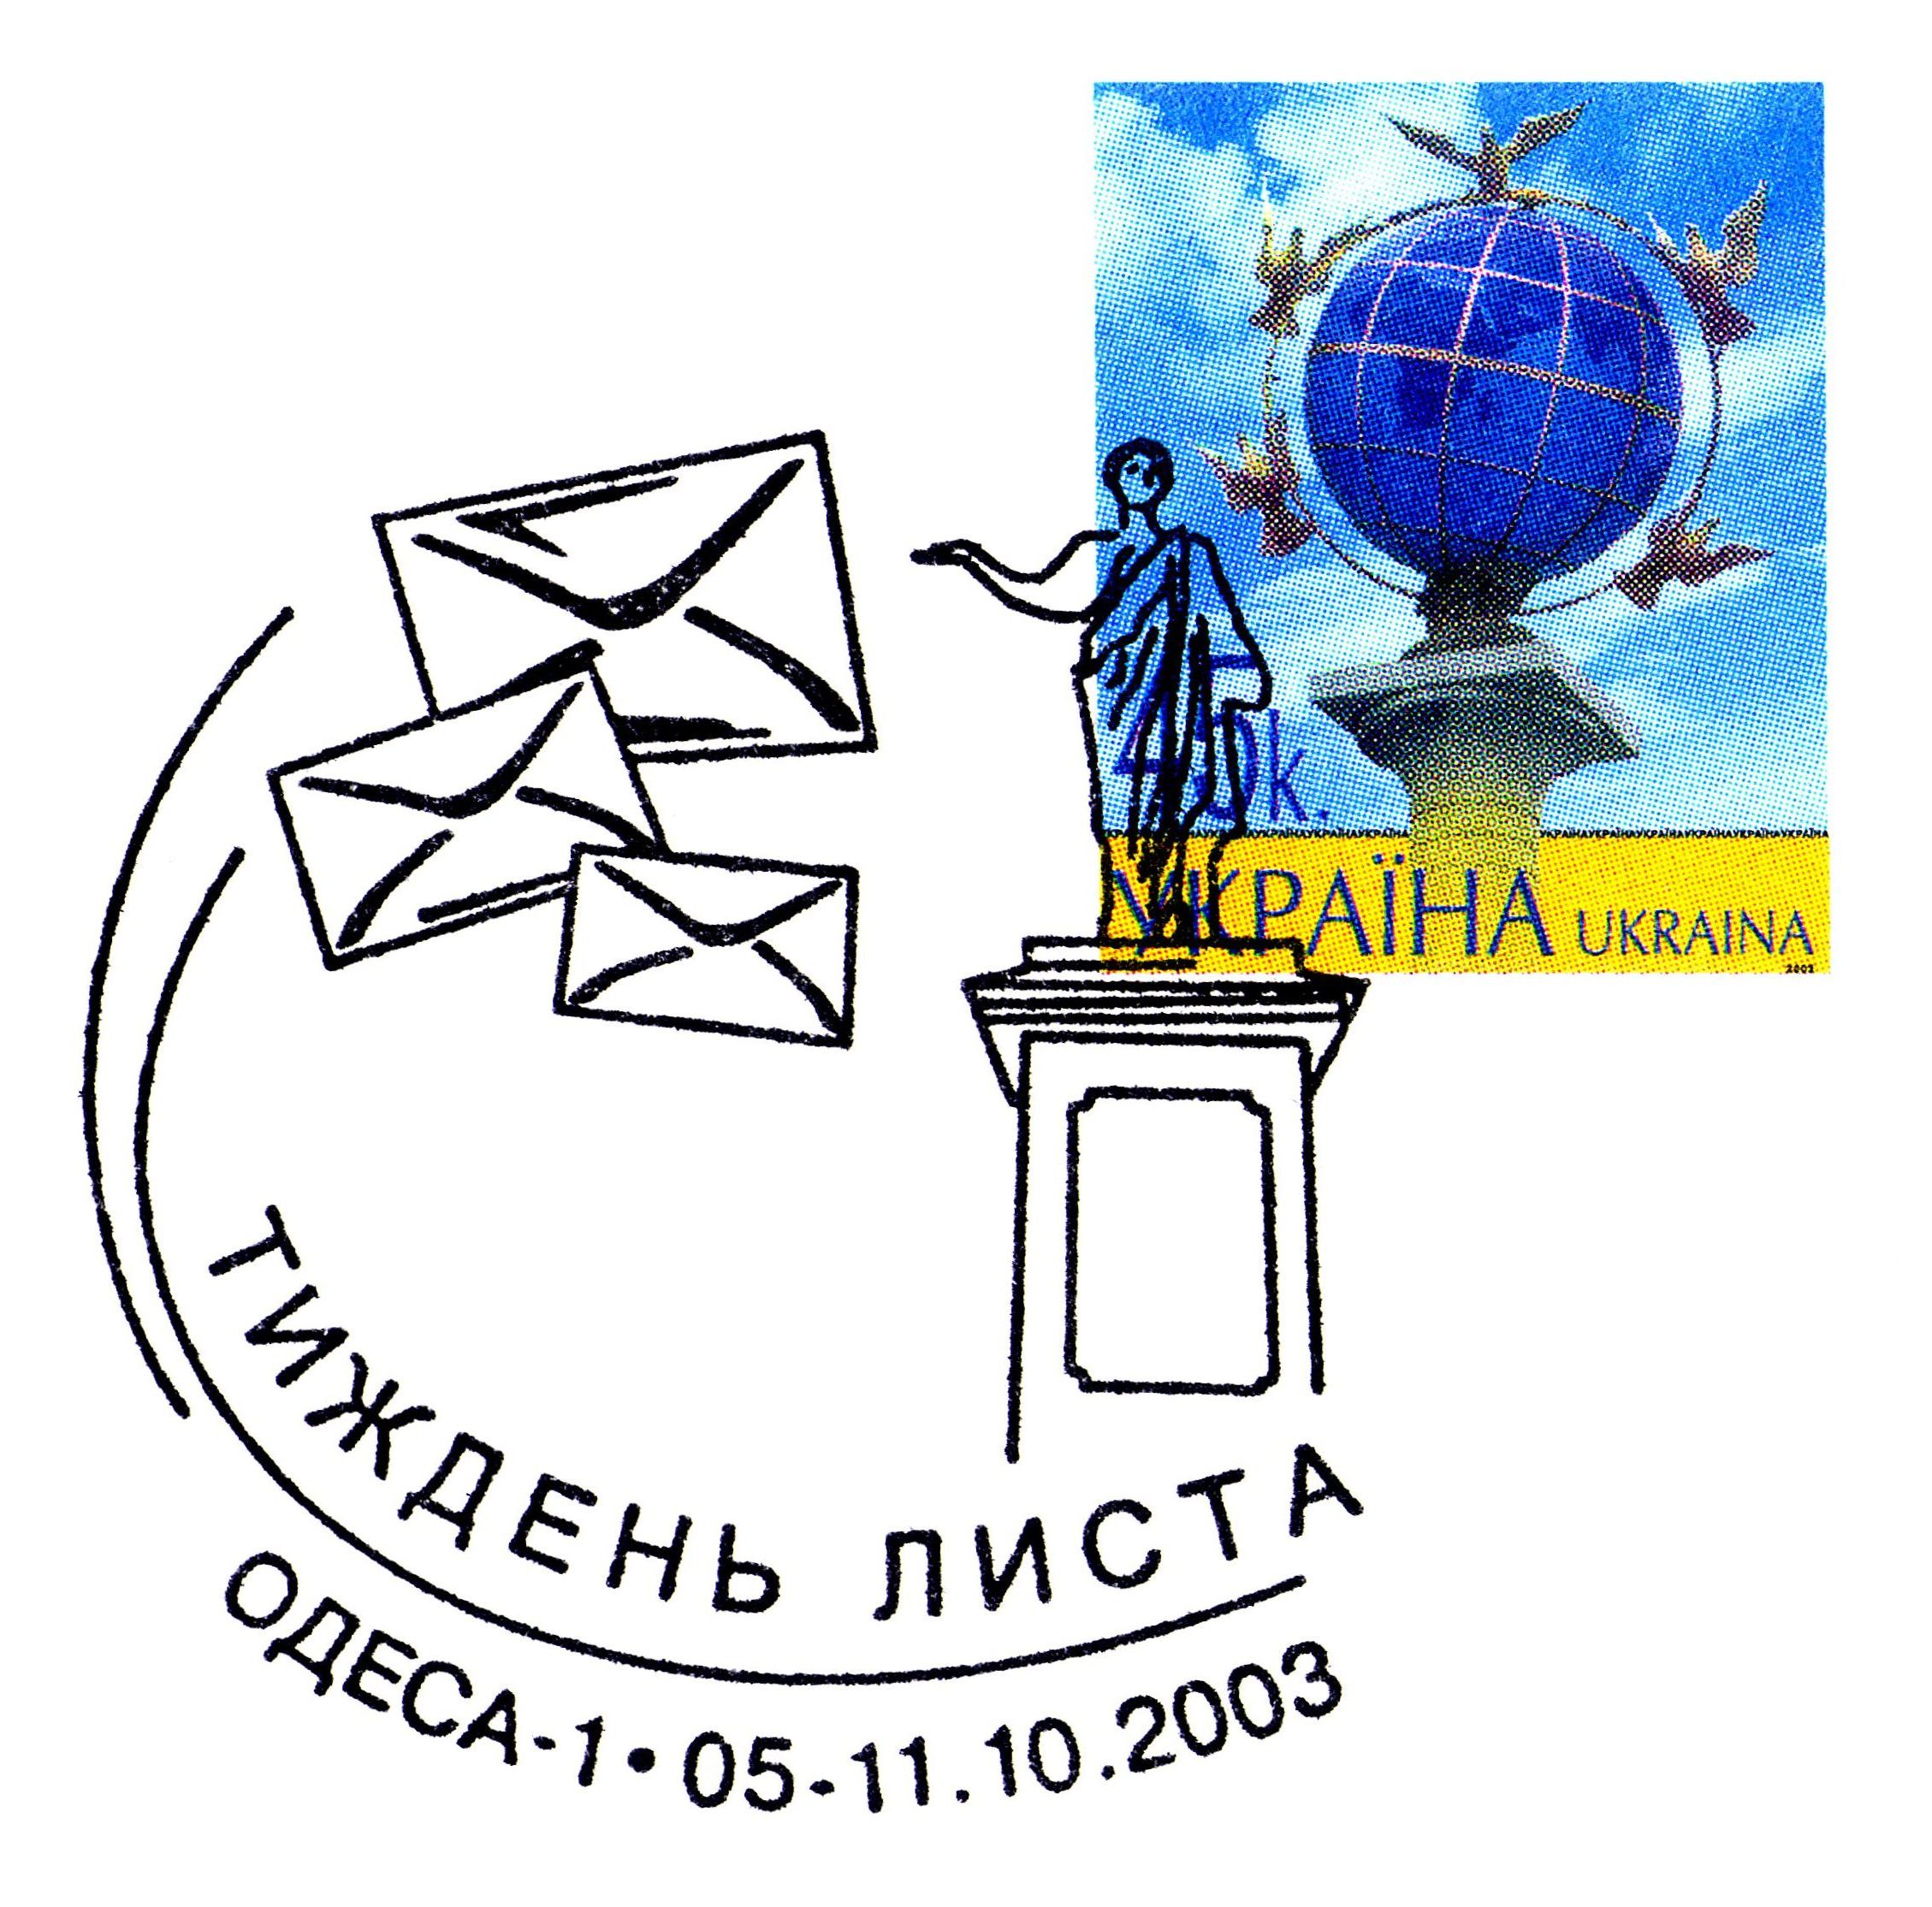 ОдессаНеделяПисьмаСпецгаш2003